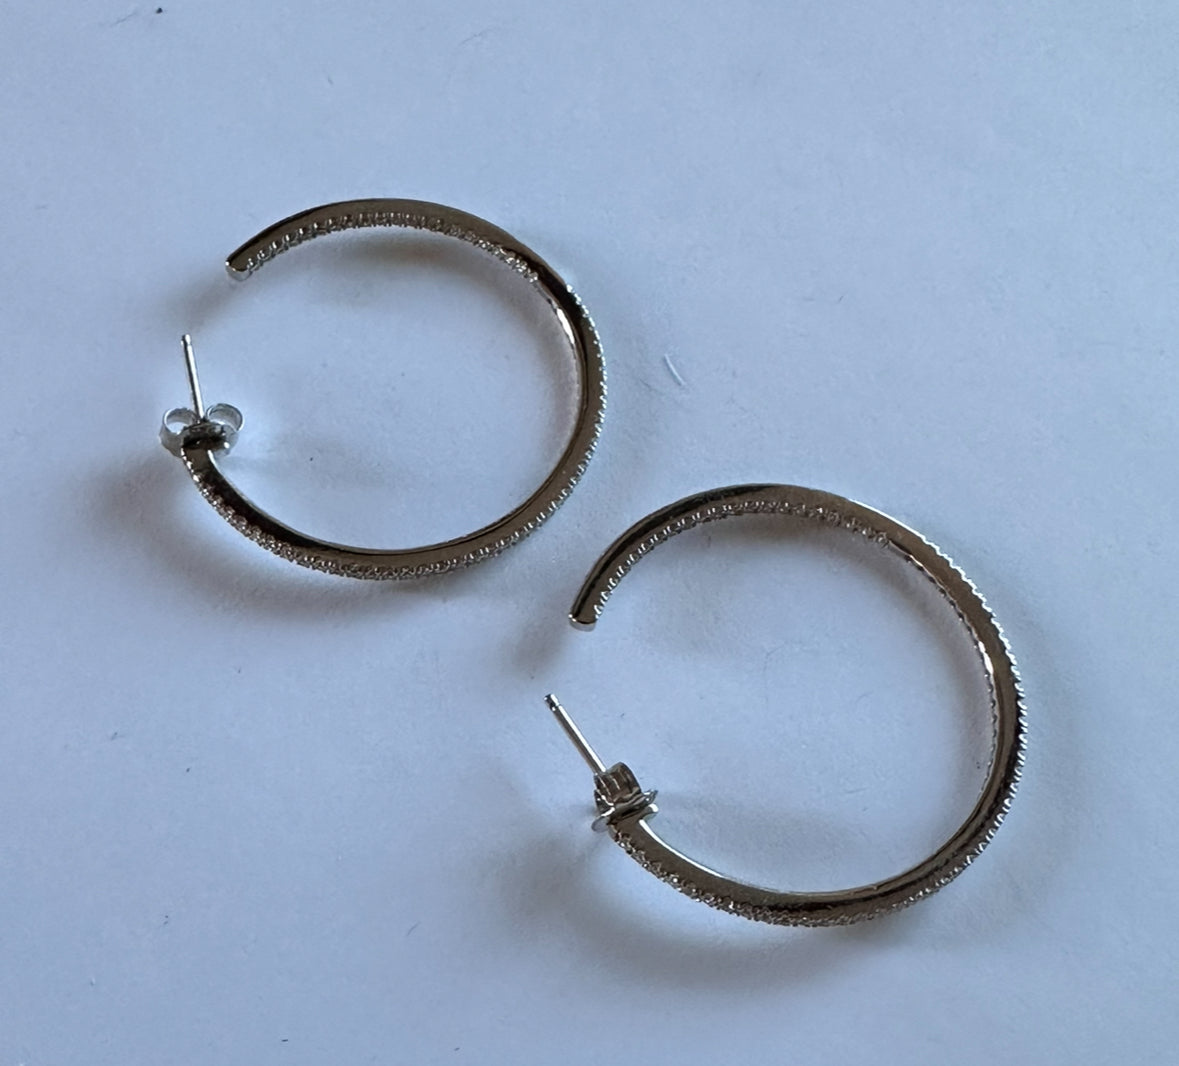 SONS OF ANARCHY: Gemma's Silver Hoop Earrings